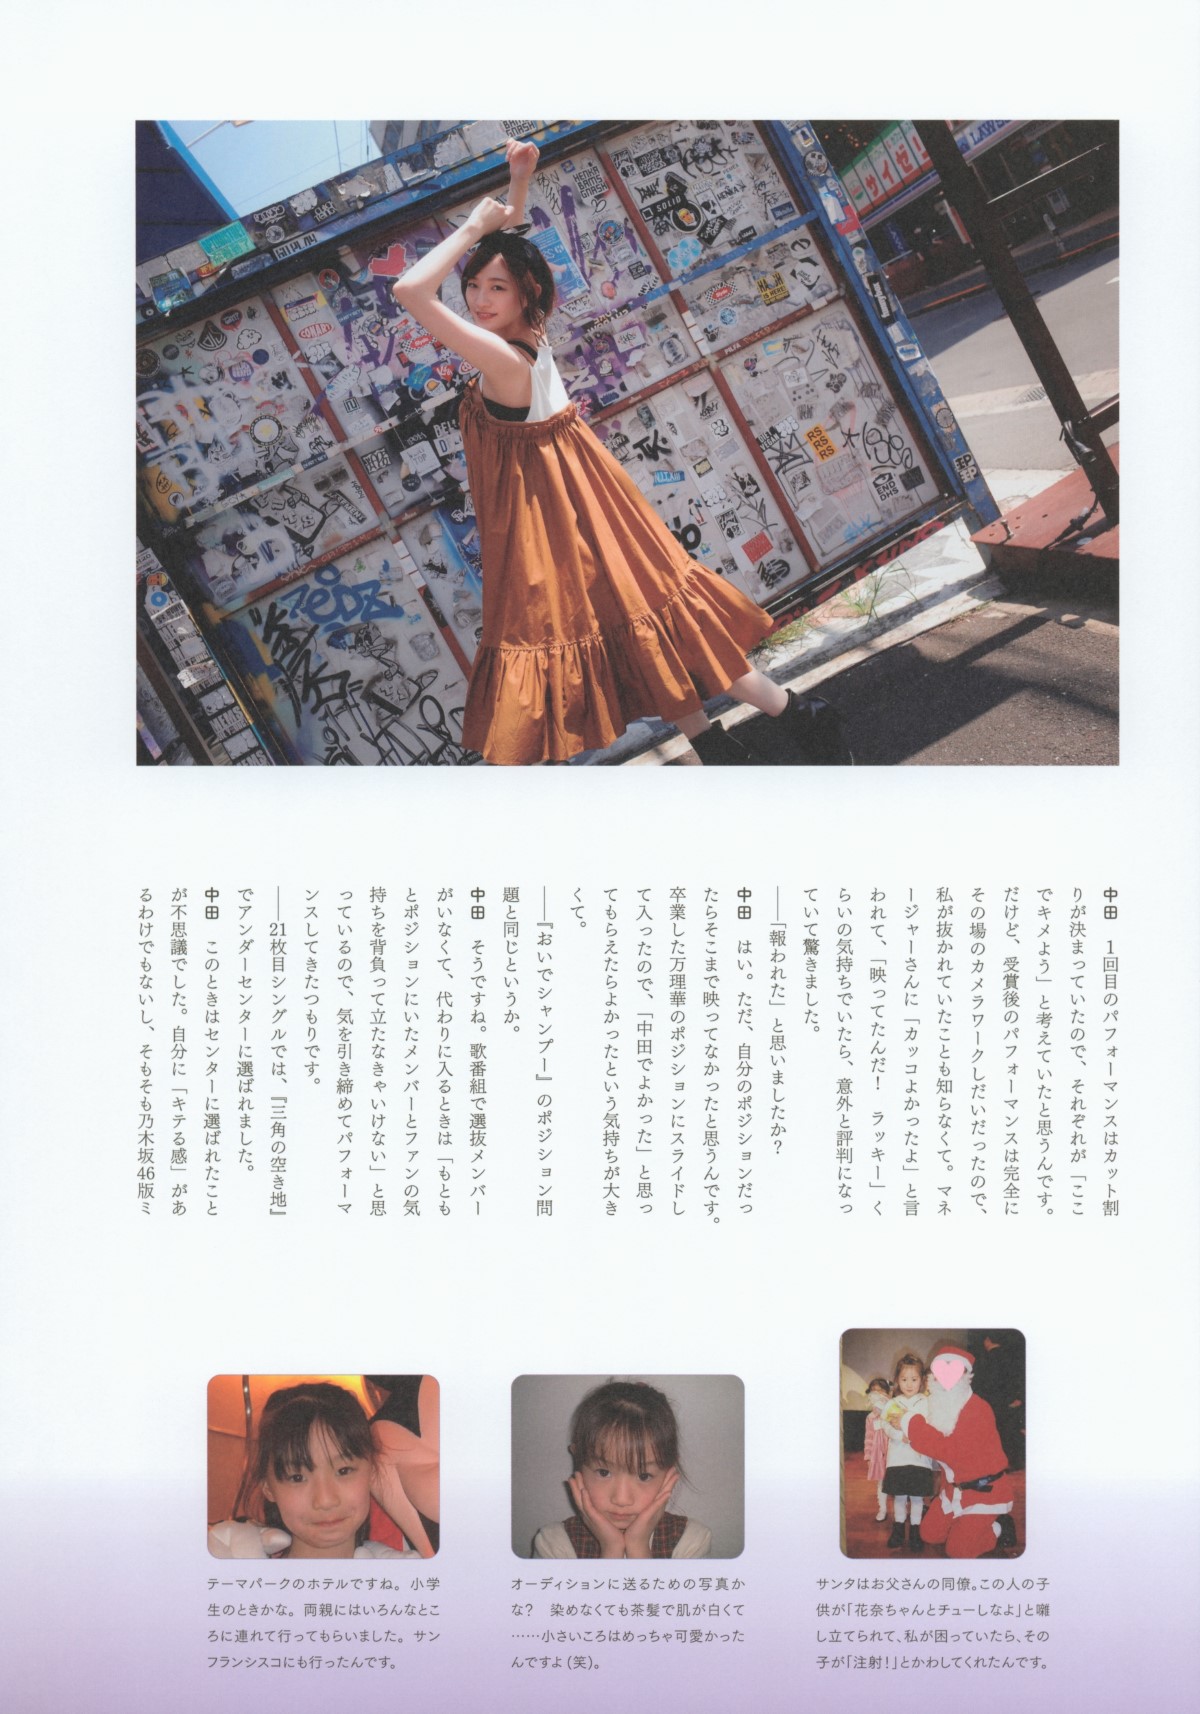 Photobook 2020.10.13 中田花奈1st写真集 好きなことだけをしていたい 154.jpg